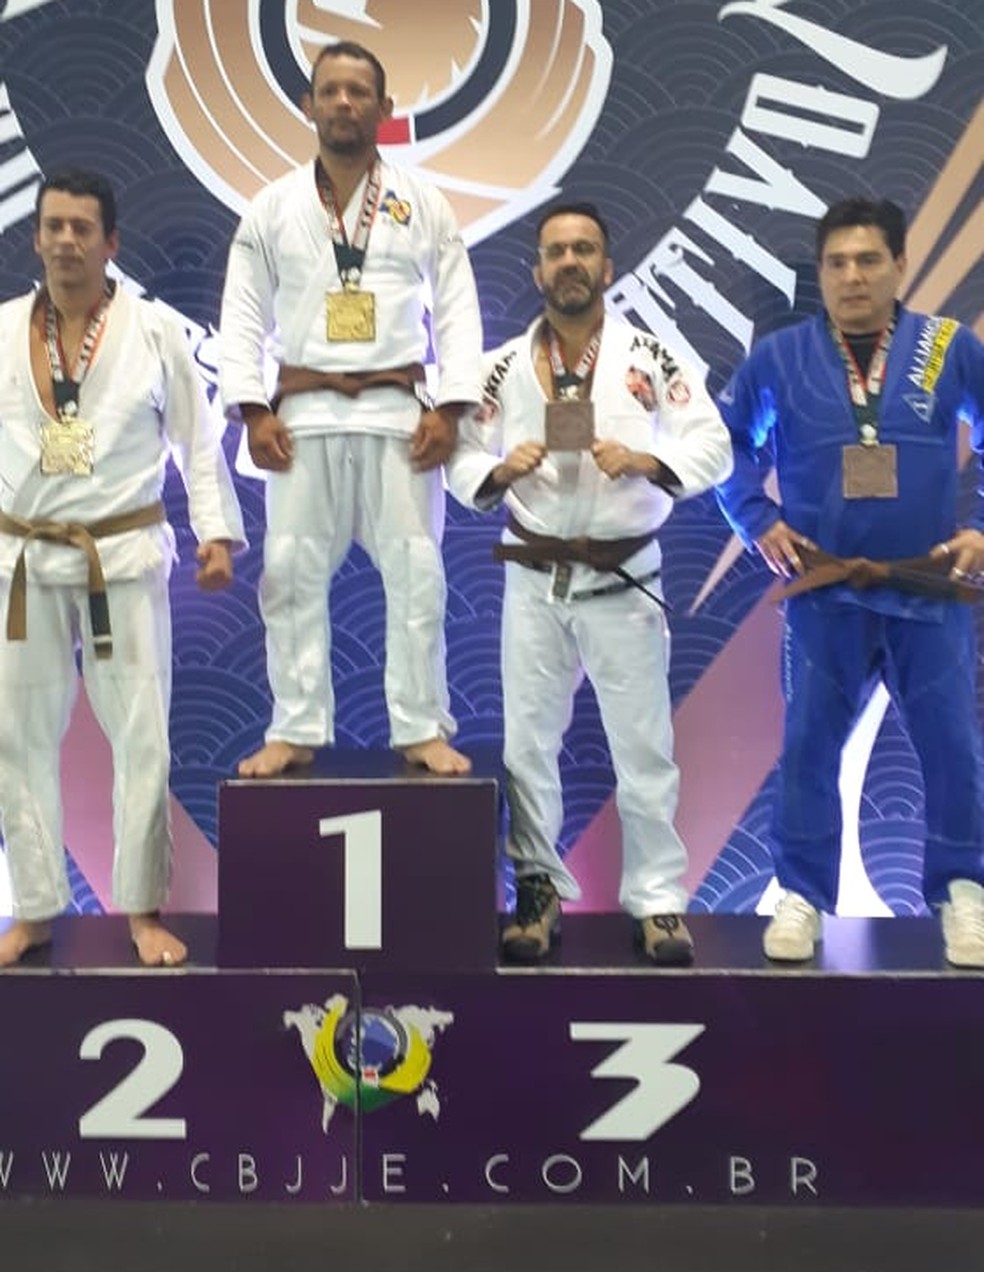 Atleta de Criciúma é campeão mundial de jiu-jitsu – Folha Regional